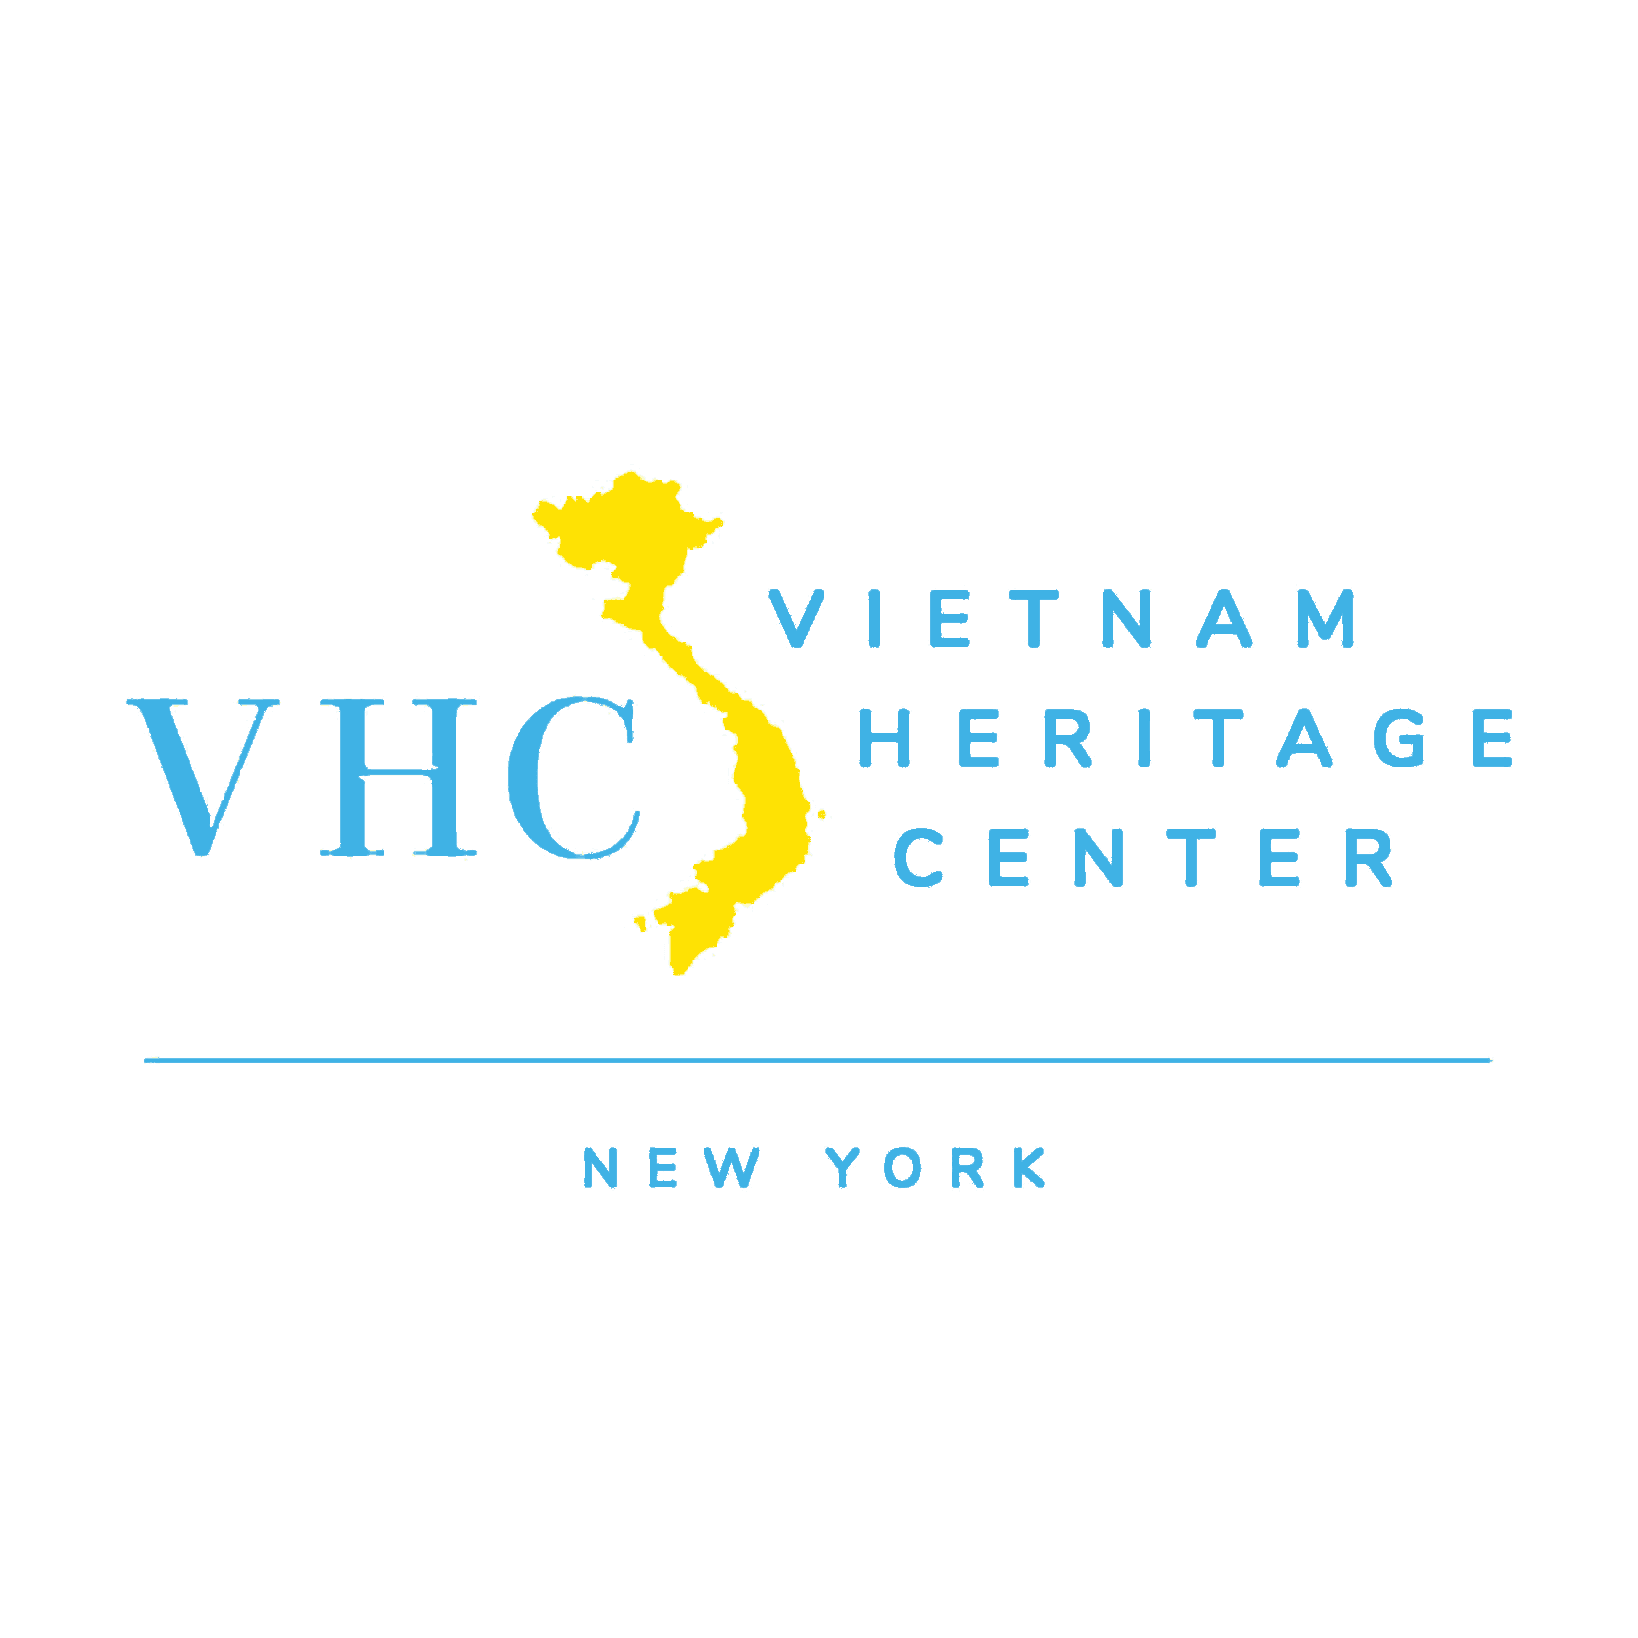 Vietnam Heritage Center (VHC)